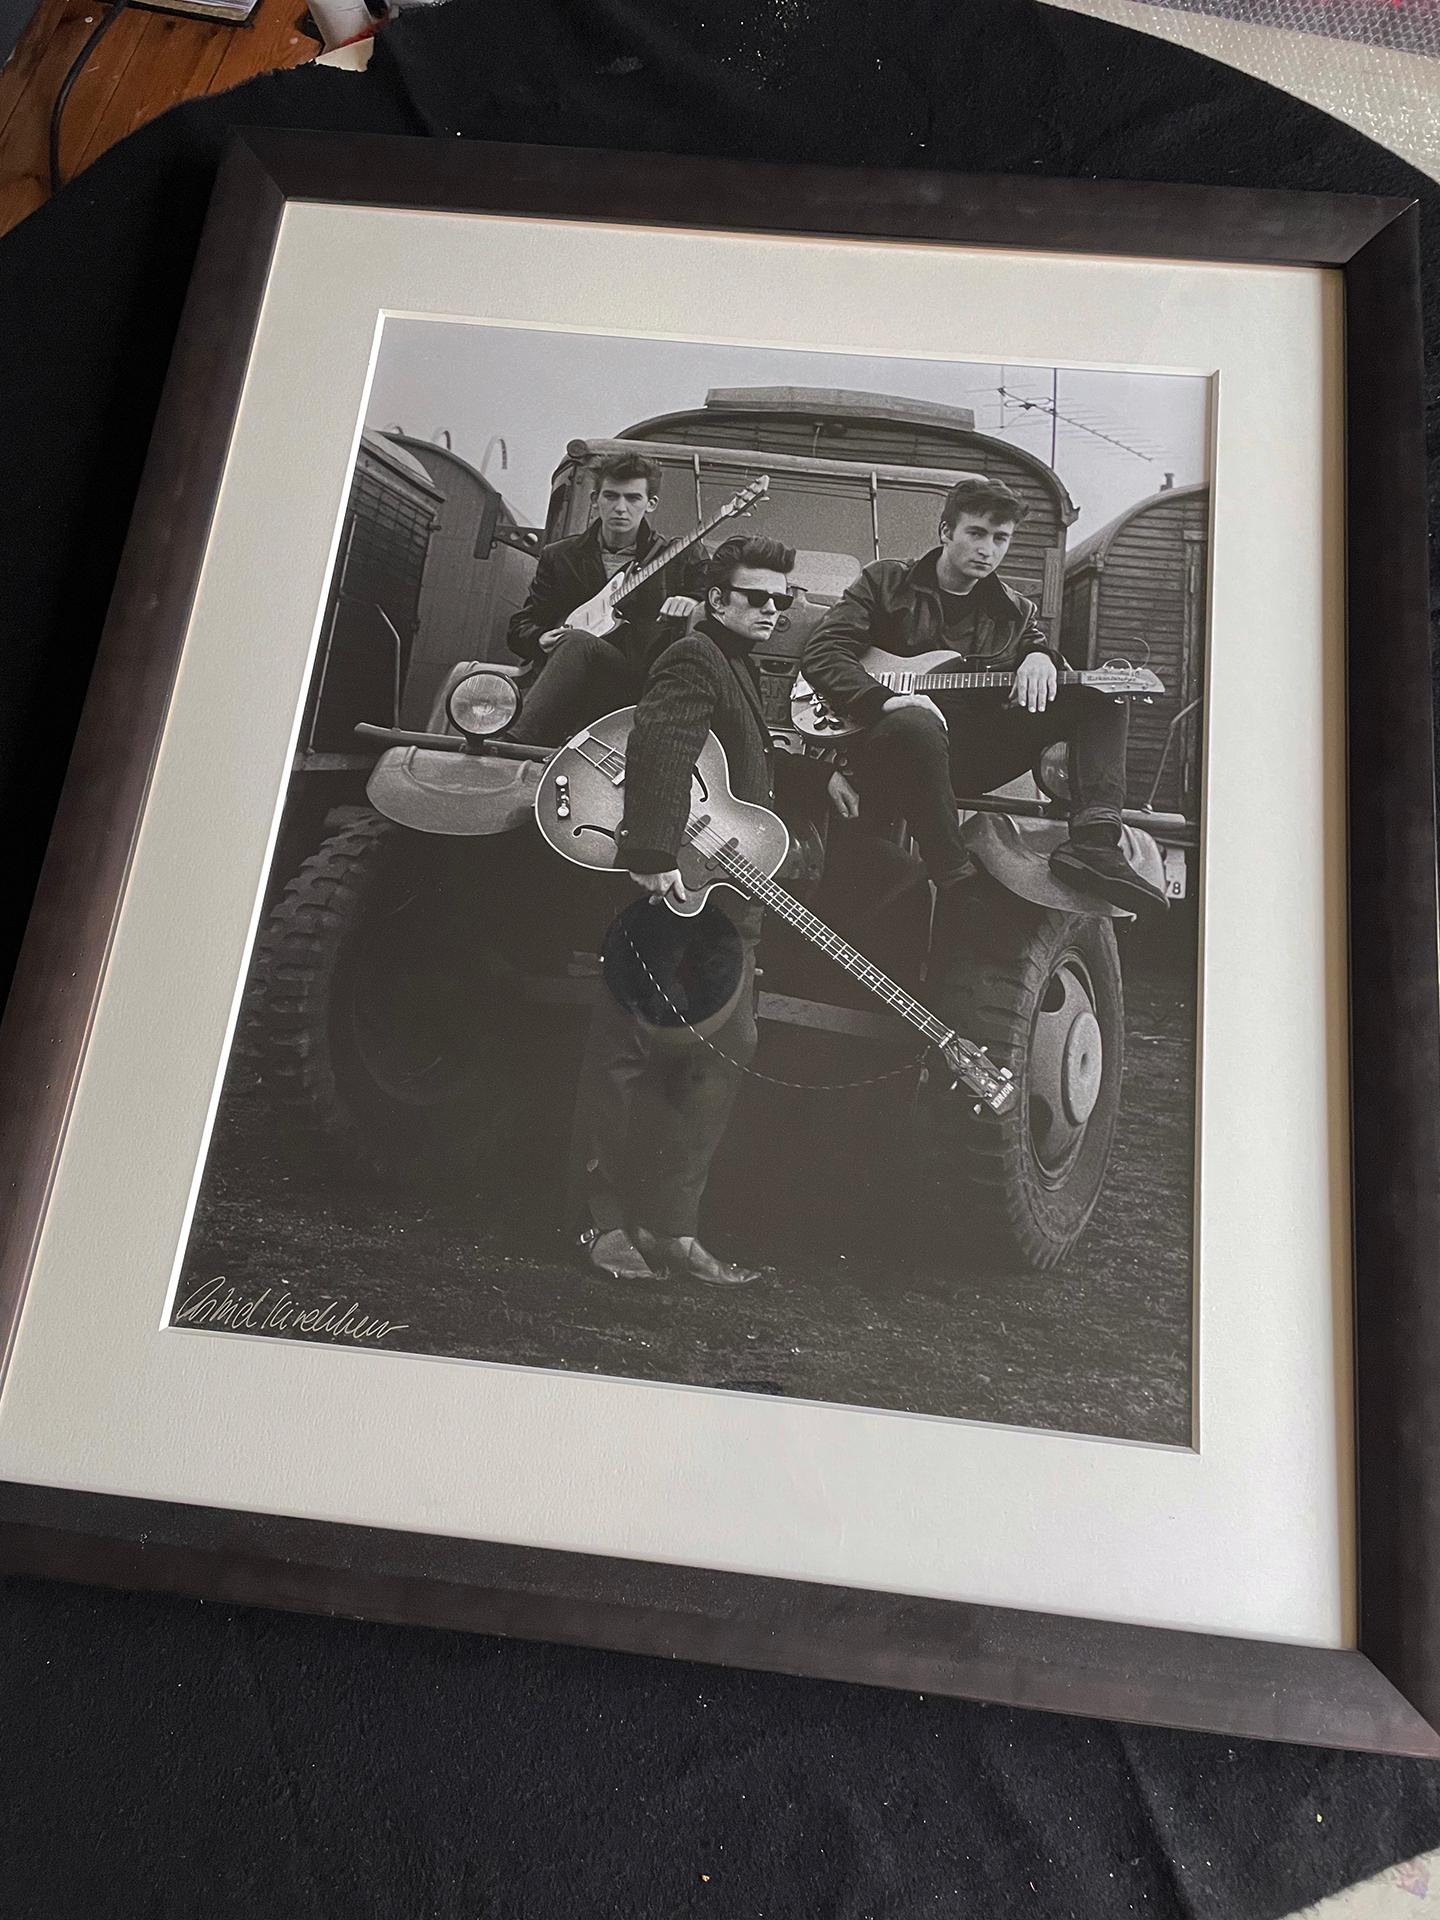 Astrid Kirchherr ( 20. Mai 1938 - 12. Mai 2020) war eine deutsche Fotografin und Künstlerin, die für ihre Zusammenarbeit mit den Beatles (zusammen mit ihren Freunden Klaus Voormann und Jürgen Vollmer) und ihre Fotografien der Originalmitglieder der